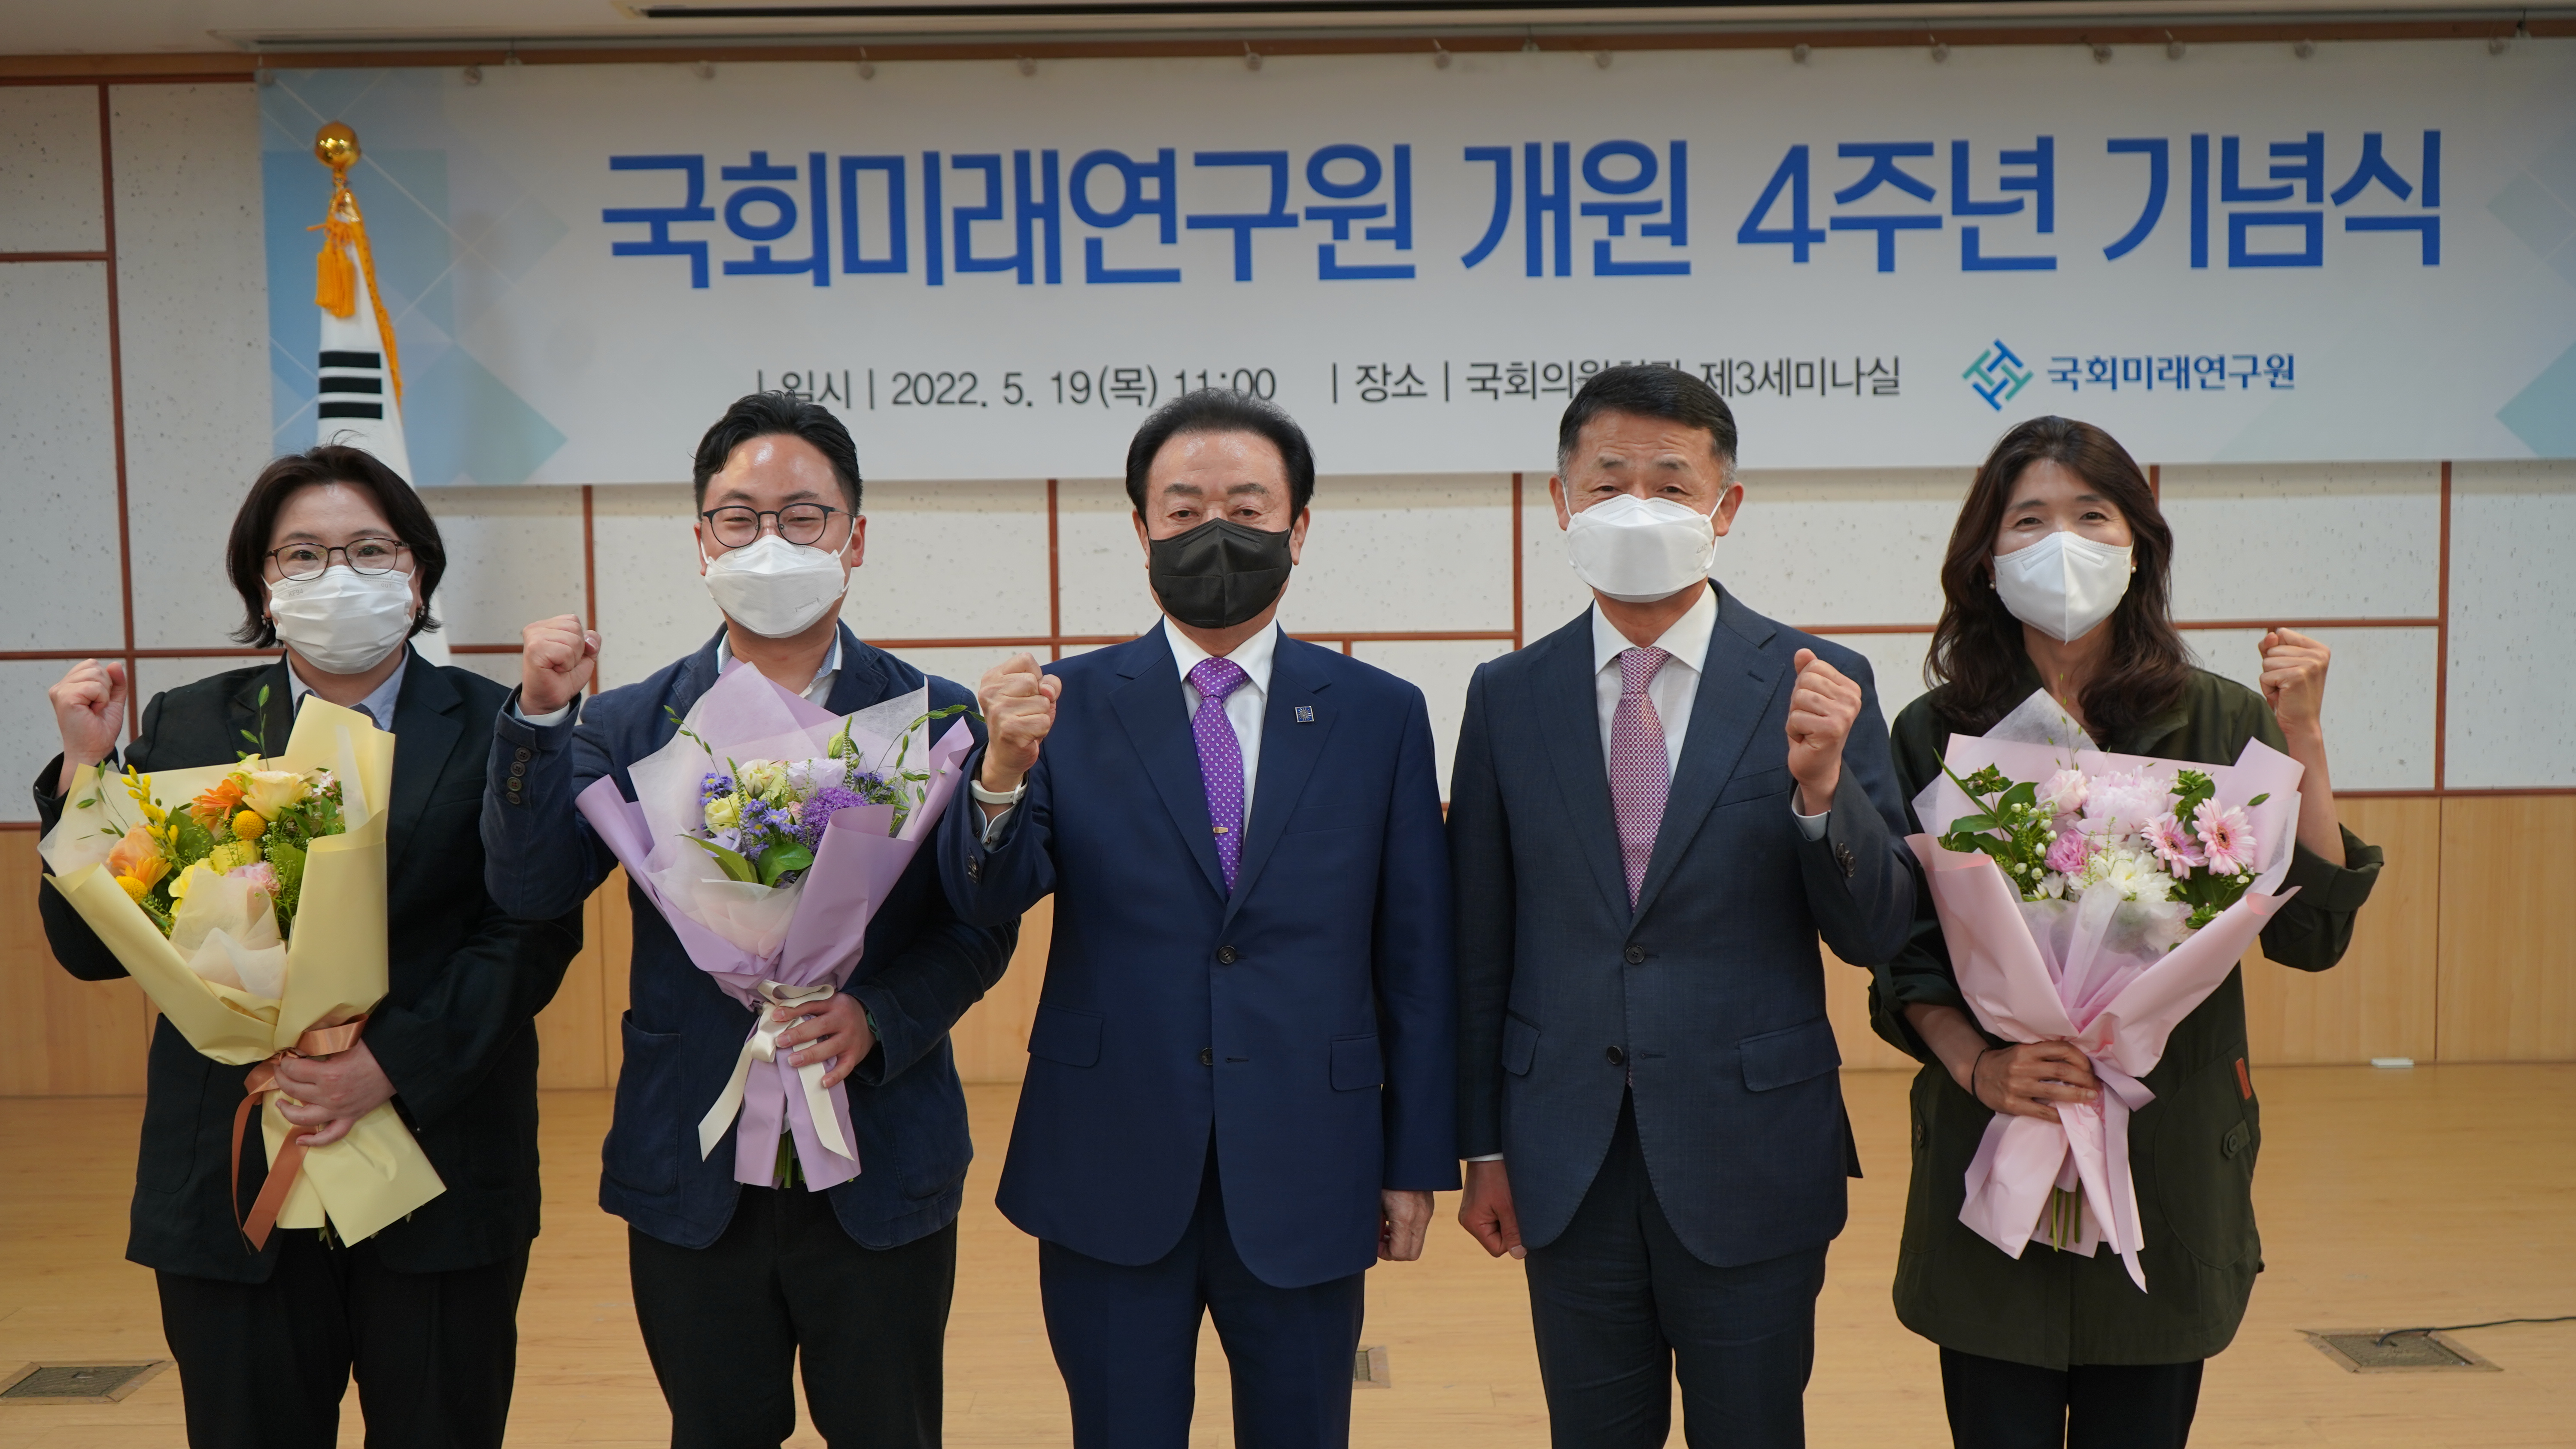 [05.19] 국회미래연구원, 개원 4주년 기념식 개최 7